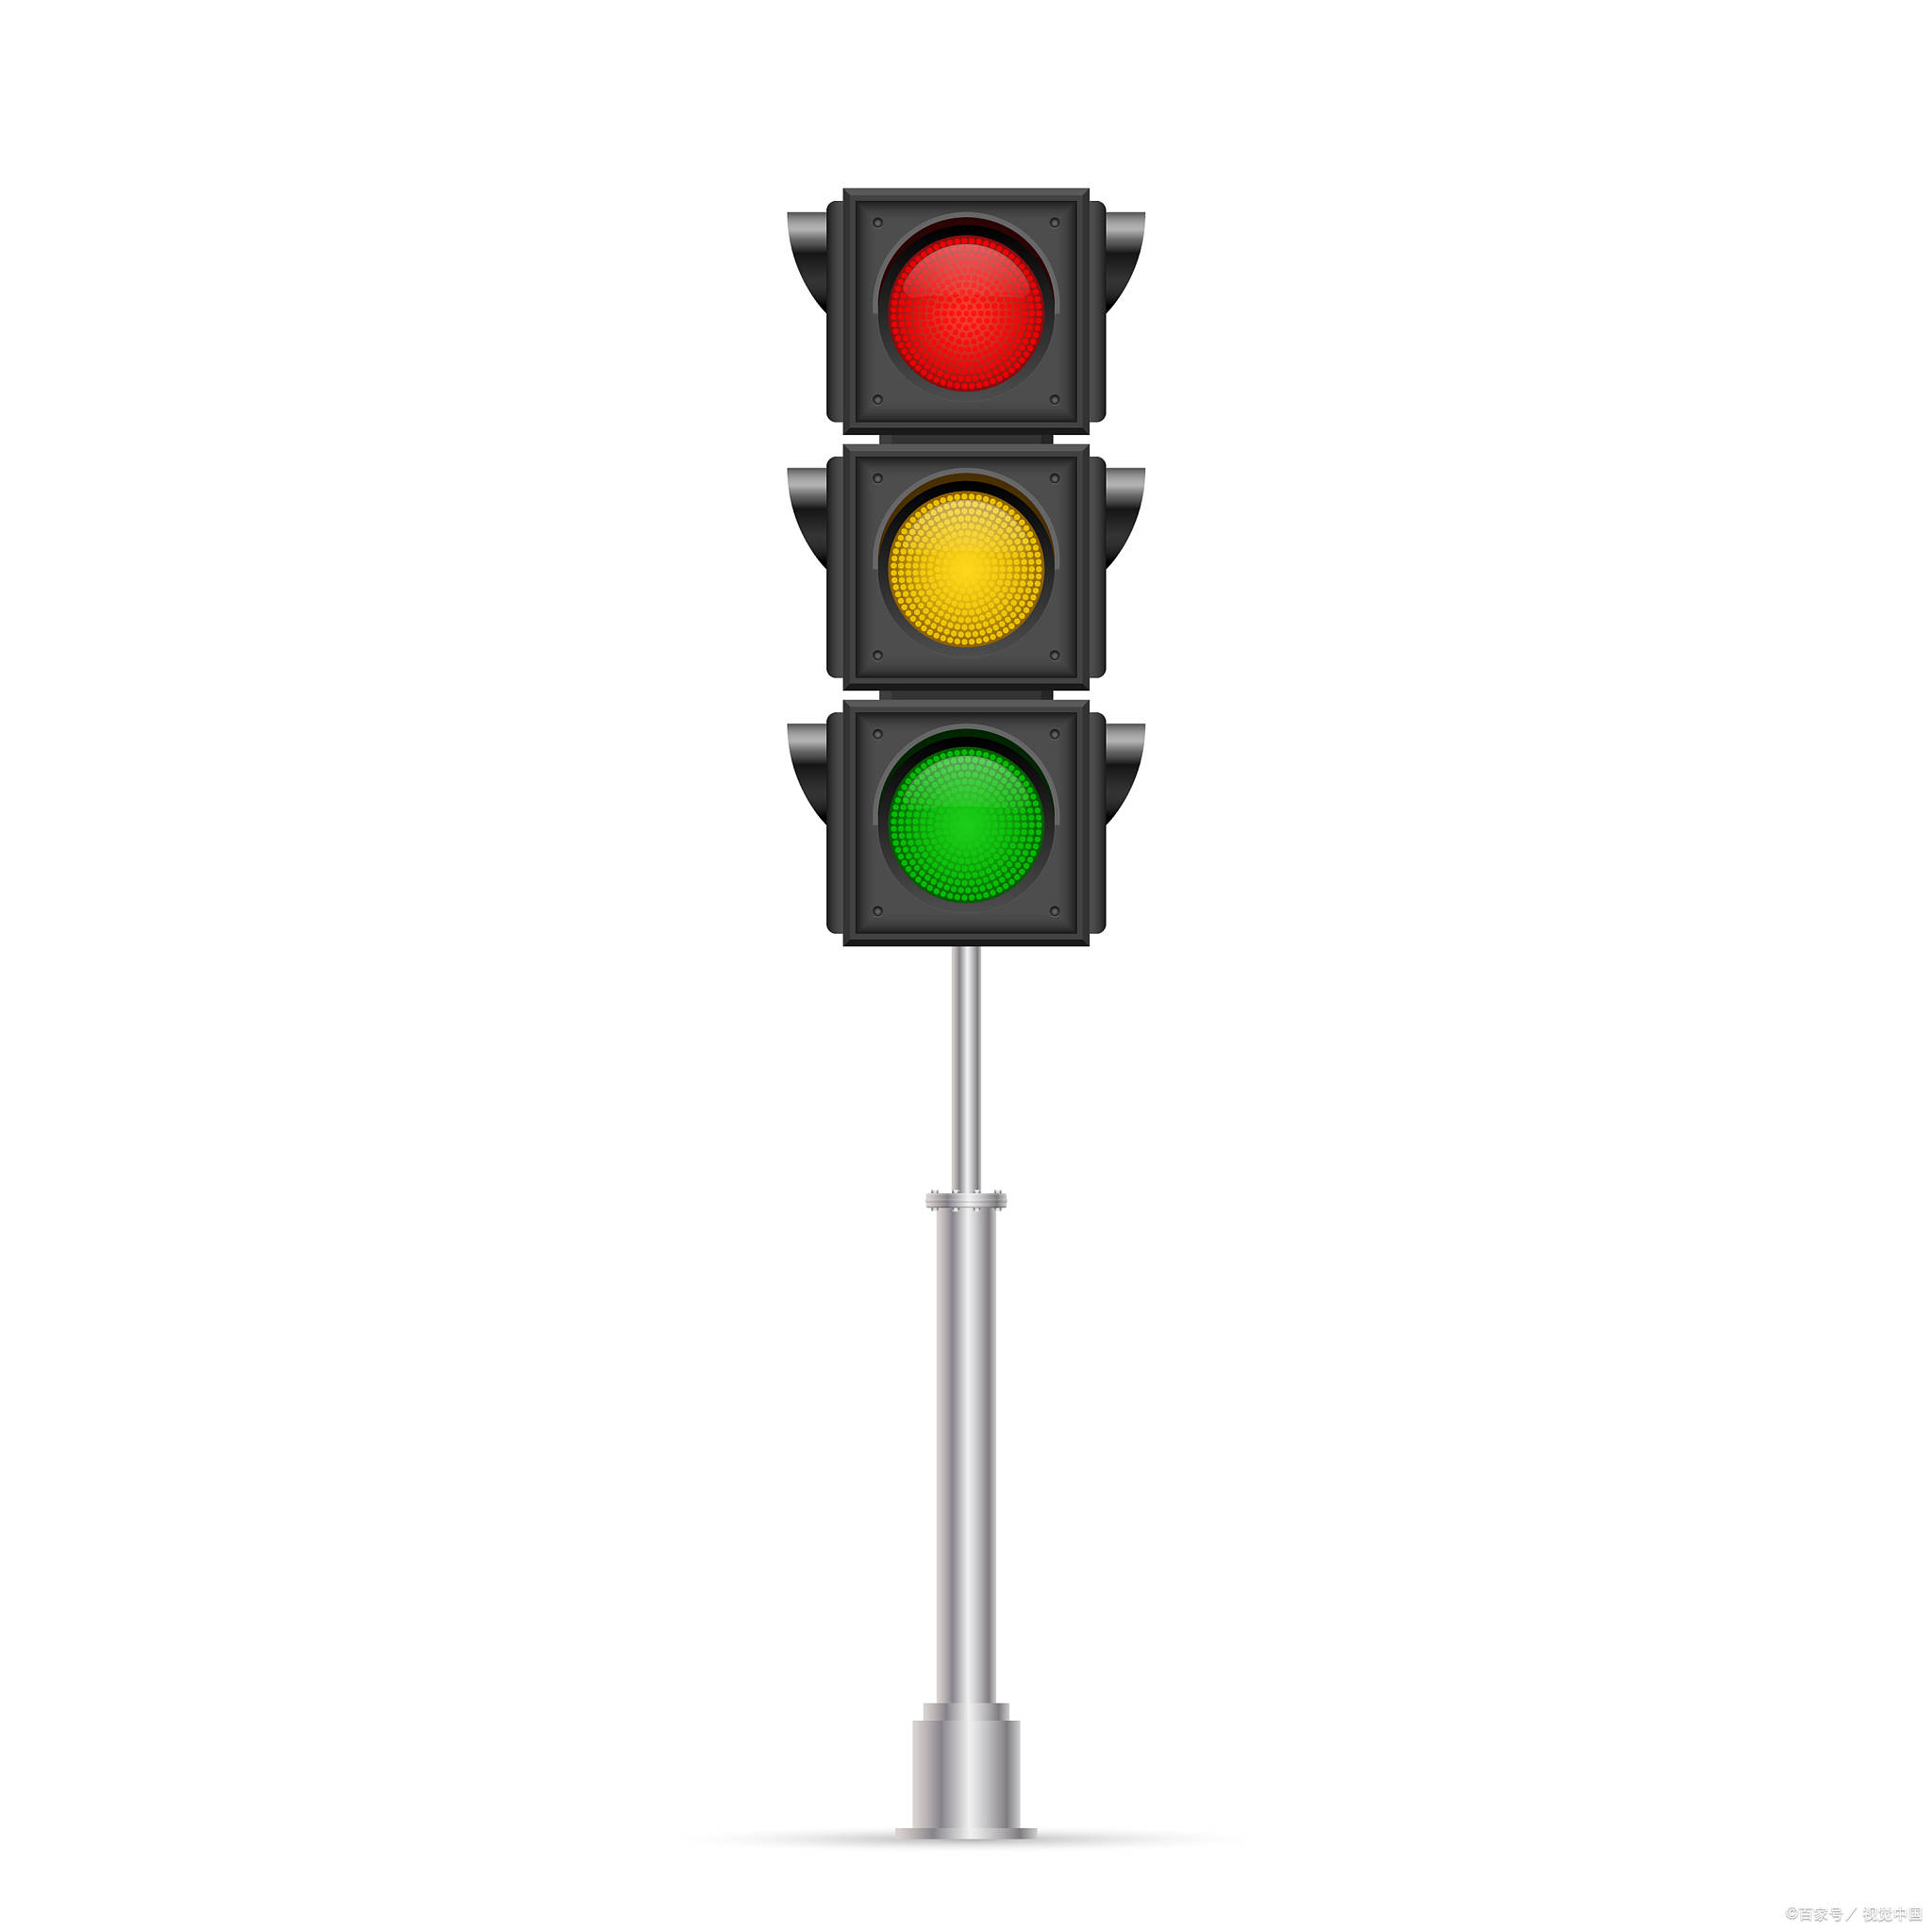 因此需要针对性地设计和制造红绿灯系统,以确保交通顺畅和安全